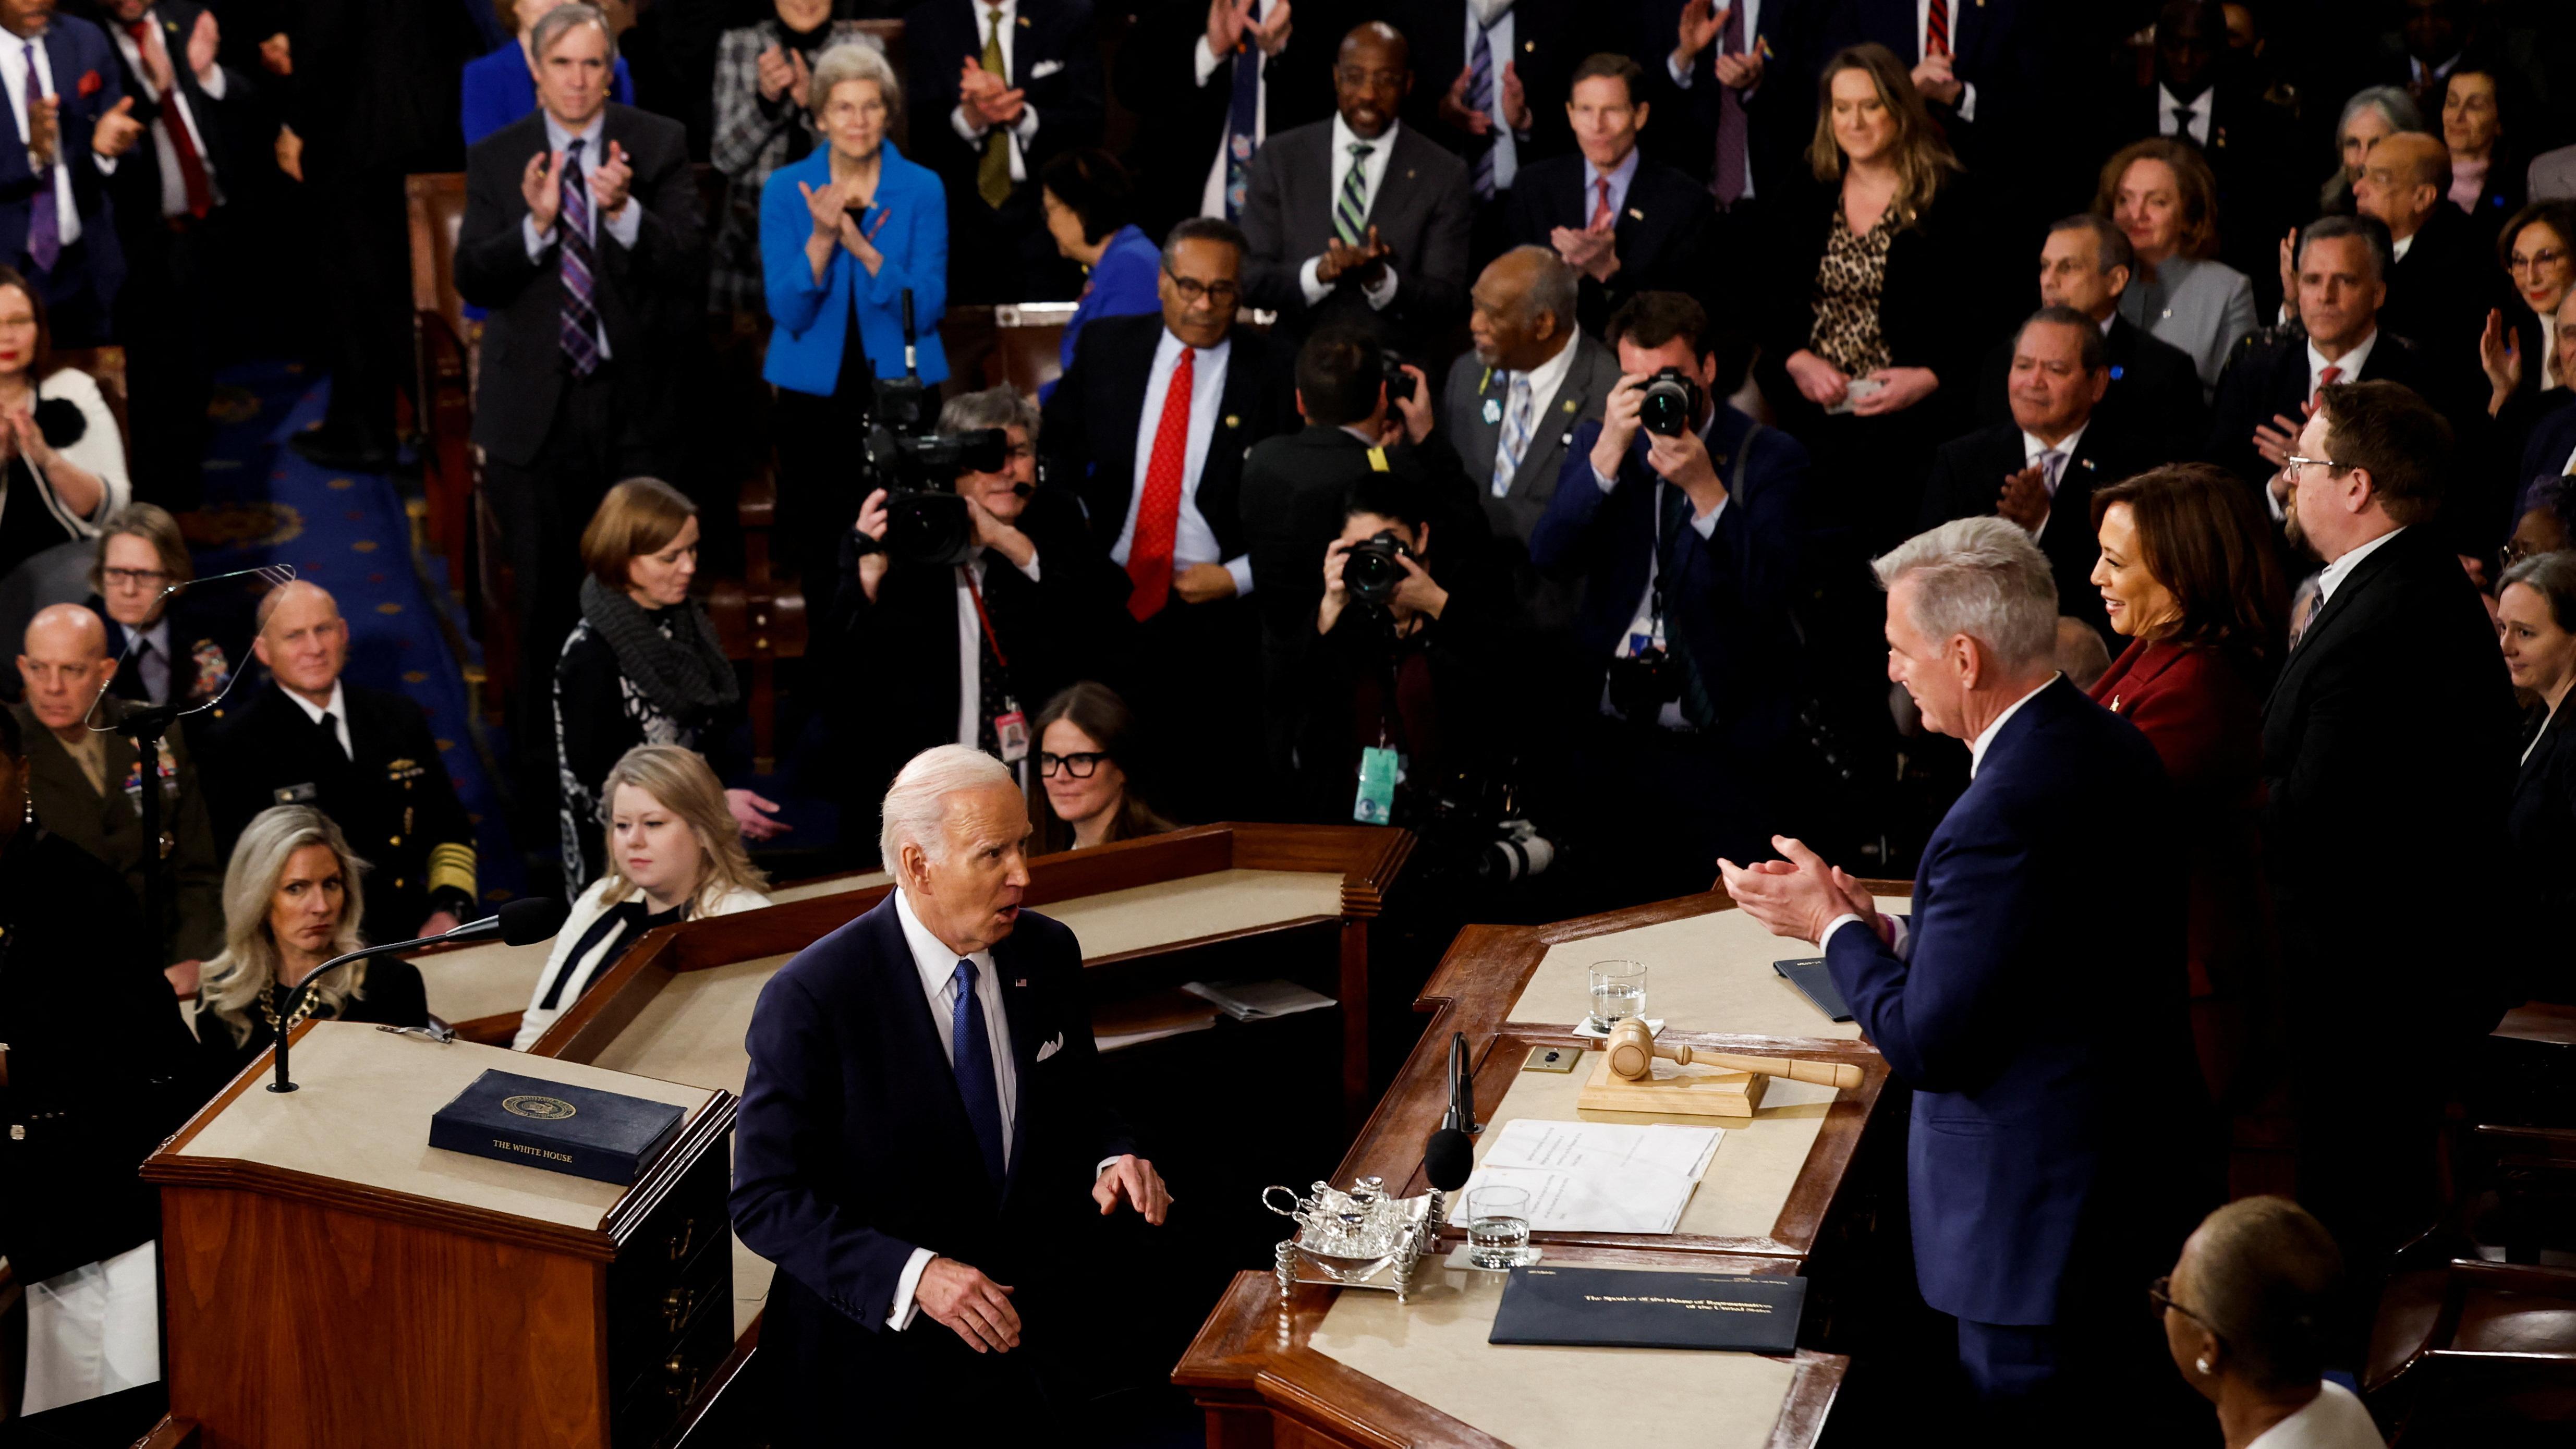 Biden observado por diversos parlamentares, alguns aplaudindo